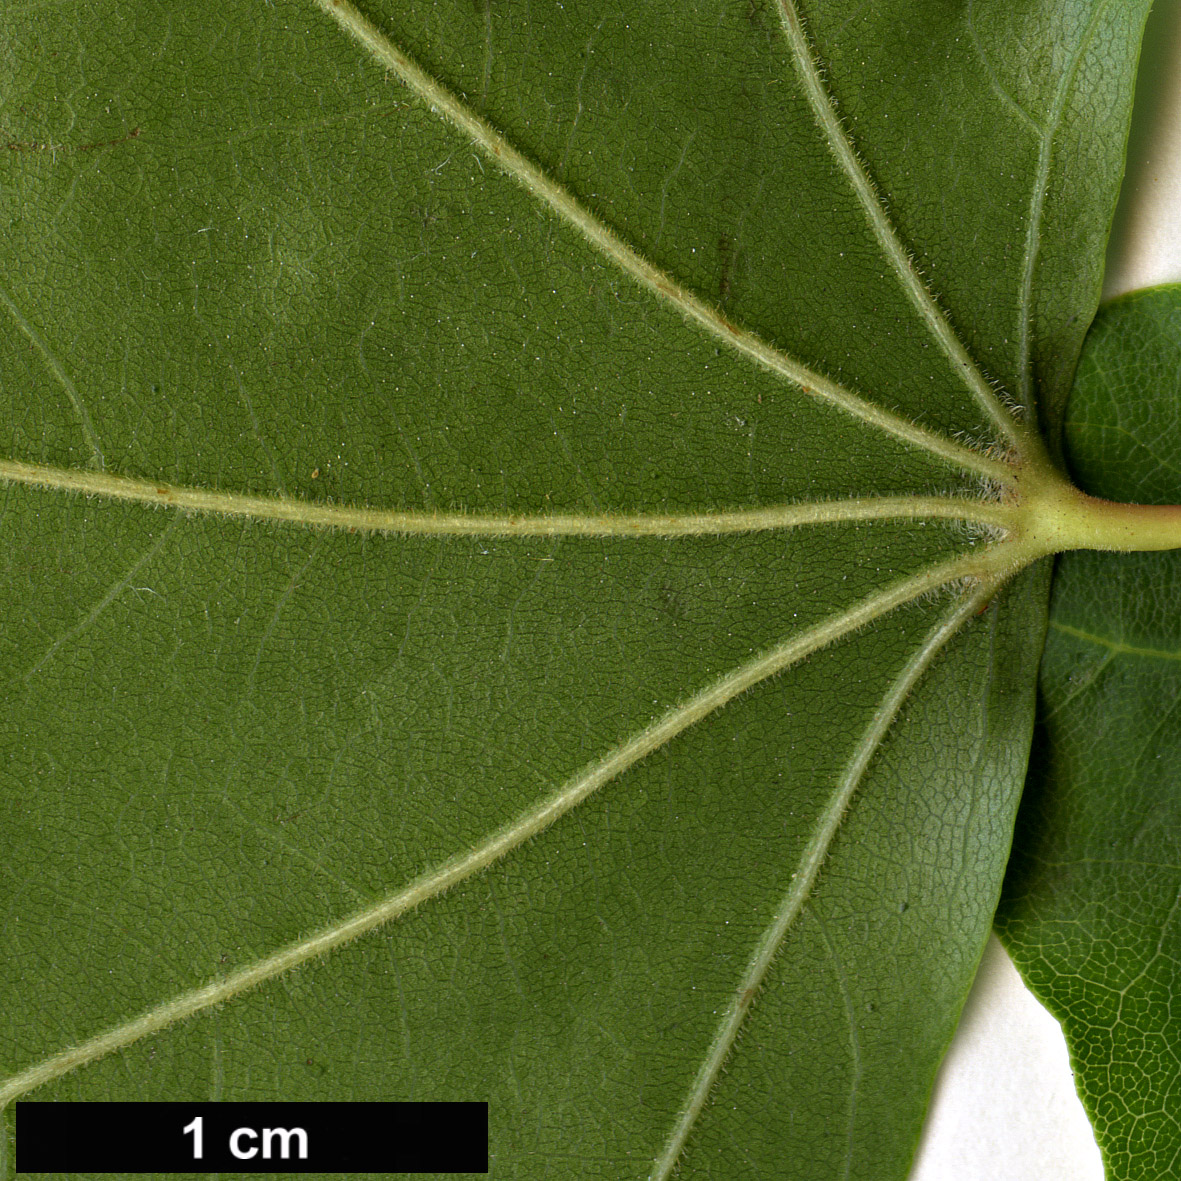 High resolution image: Family: Sapindaceae - Genus: Acer - Taxon: cappadocicum - SpeciesSub: var. sinicum